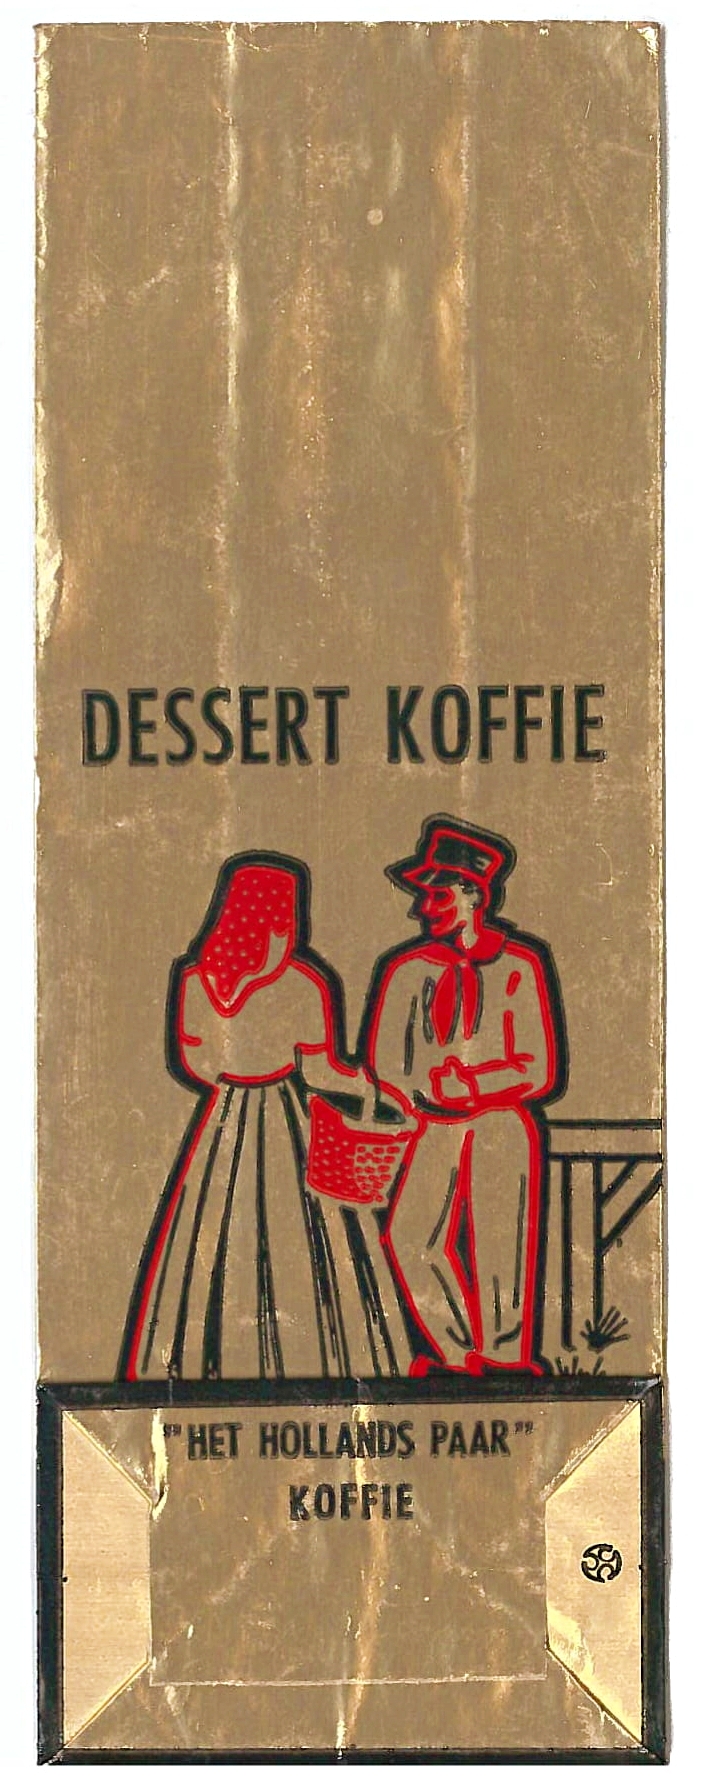 Verpakking dessert koffie van Het Hollands Paar. Collectie familie Mertens.